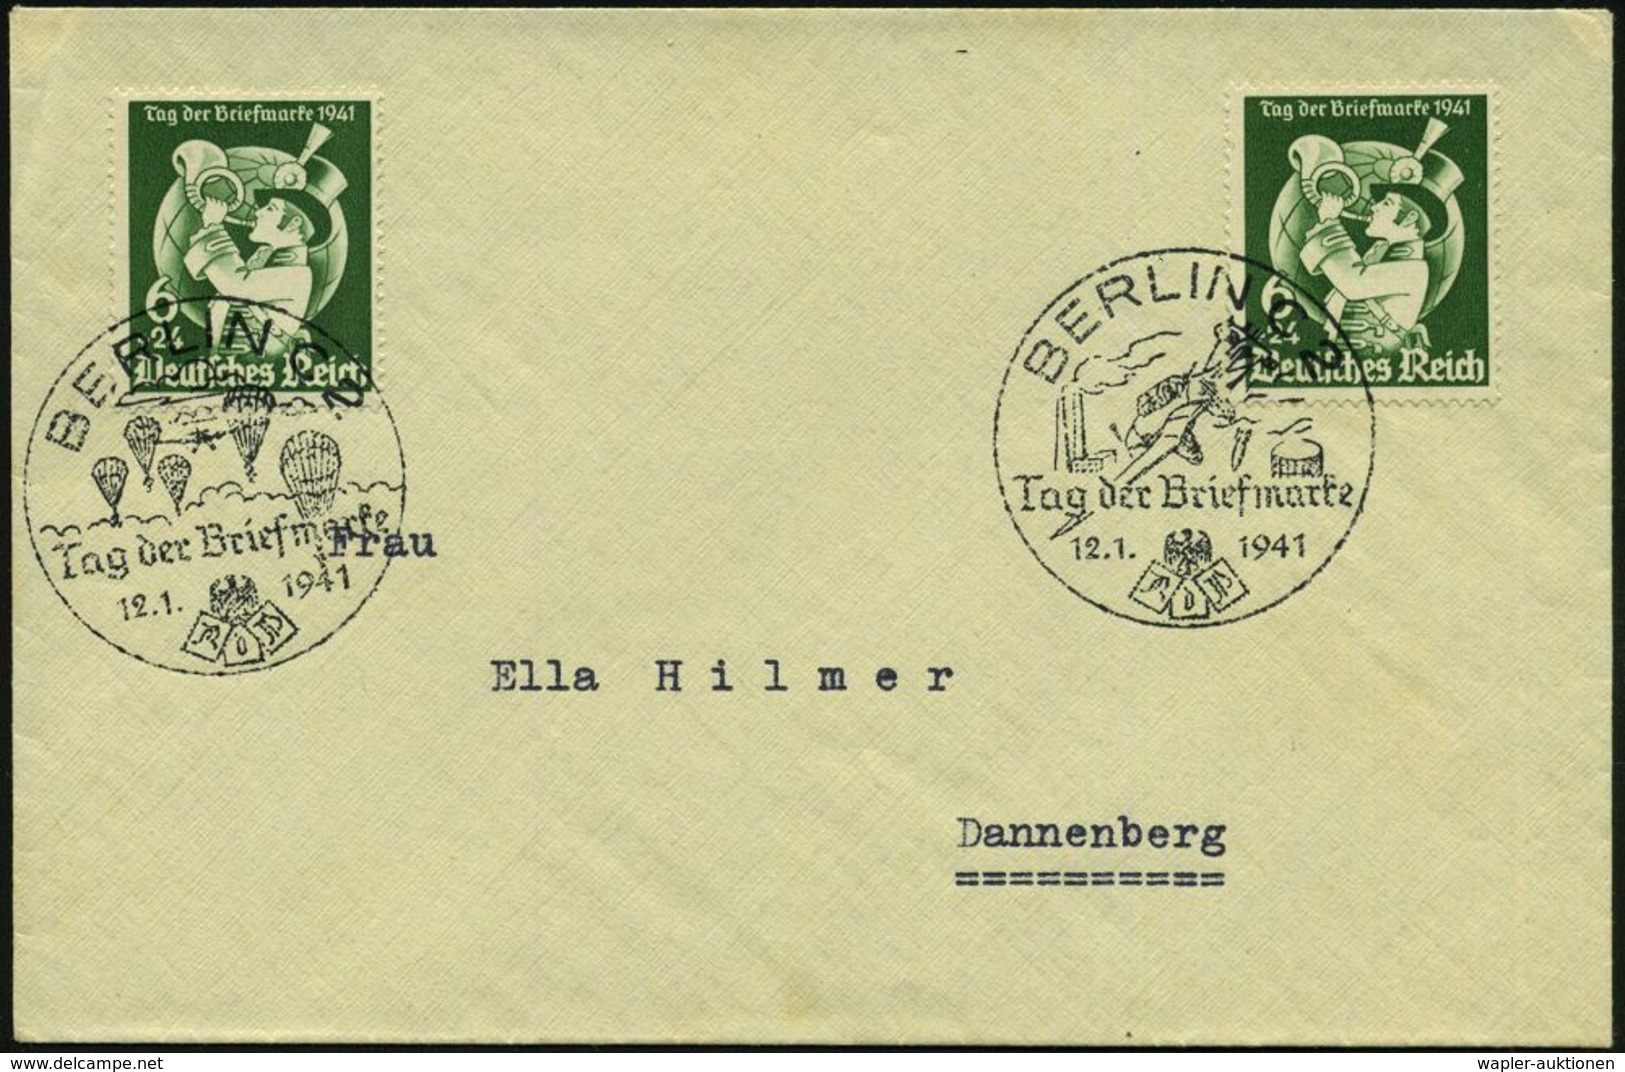 MILITÄRFLUGWESEN / MILITÄRFLUGZEUGE : BERLIN C 2/ Tag Der Briefmarke 1941 (12.1.) 2 Verschiedene SSt = Fallschirmjäger B - Flugzeuge